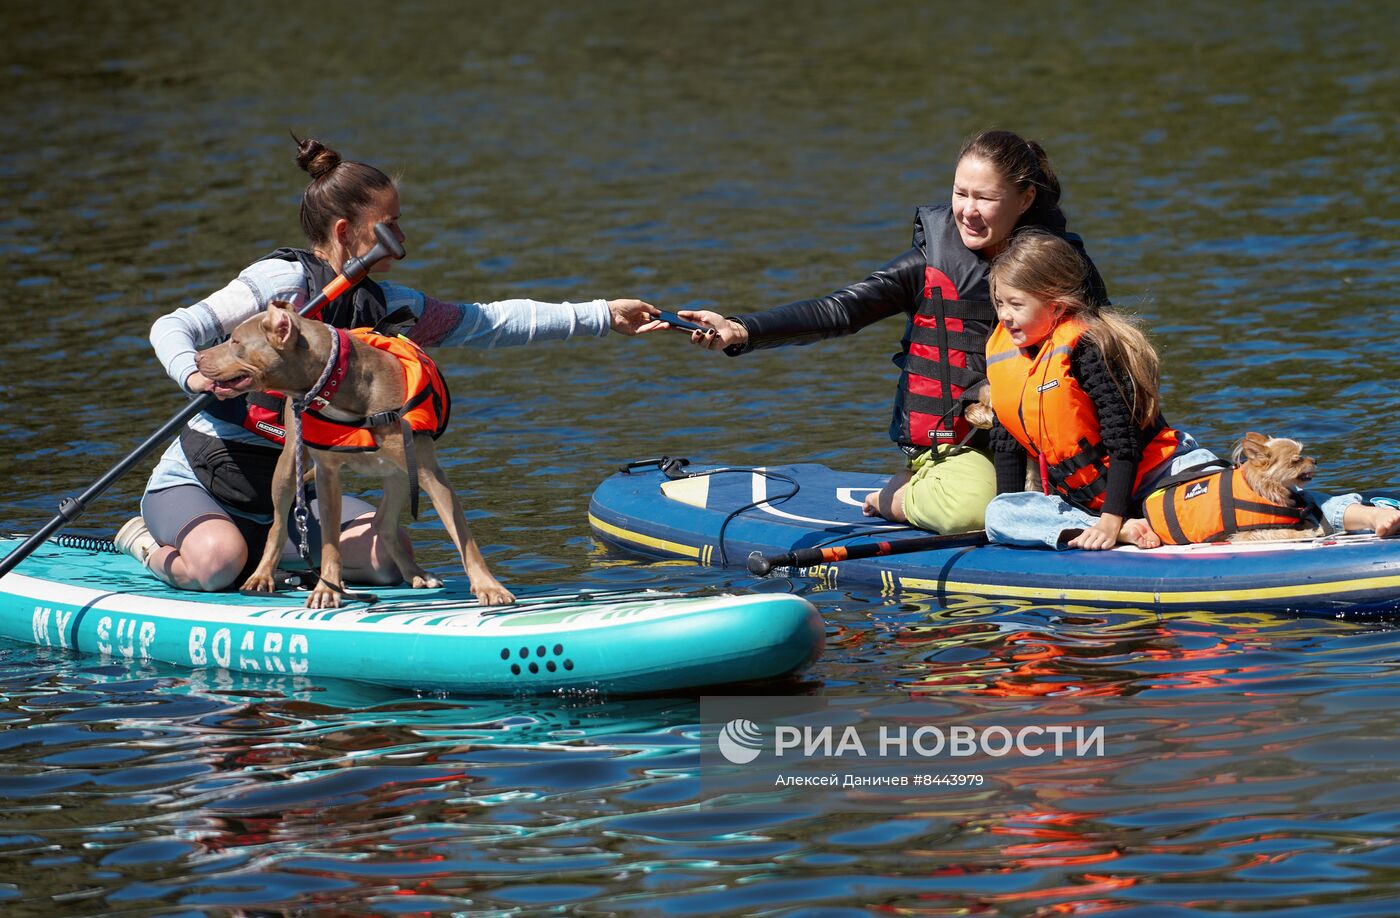 Заплыв с домашними животными на сапбордах в Петербурге